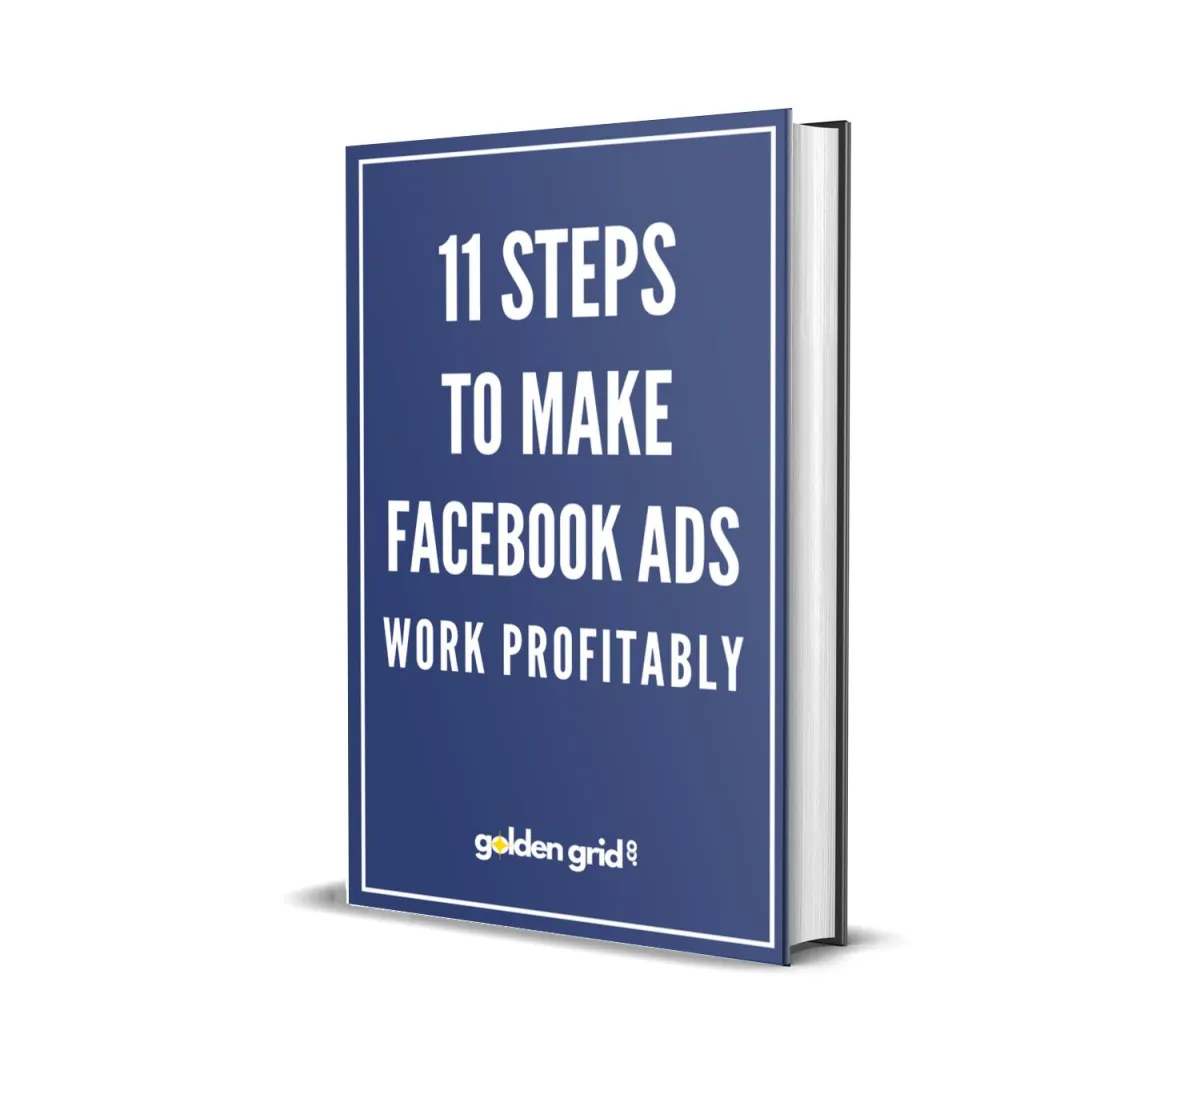 11 steps to make Facebook ads work profitably